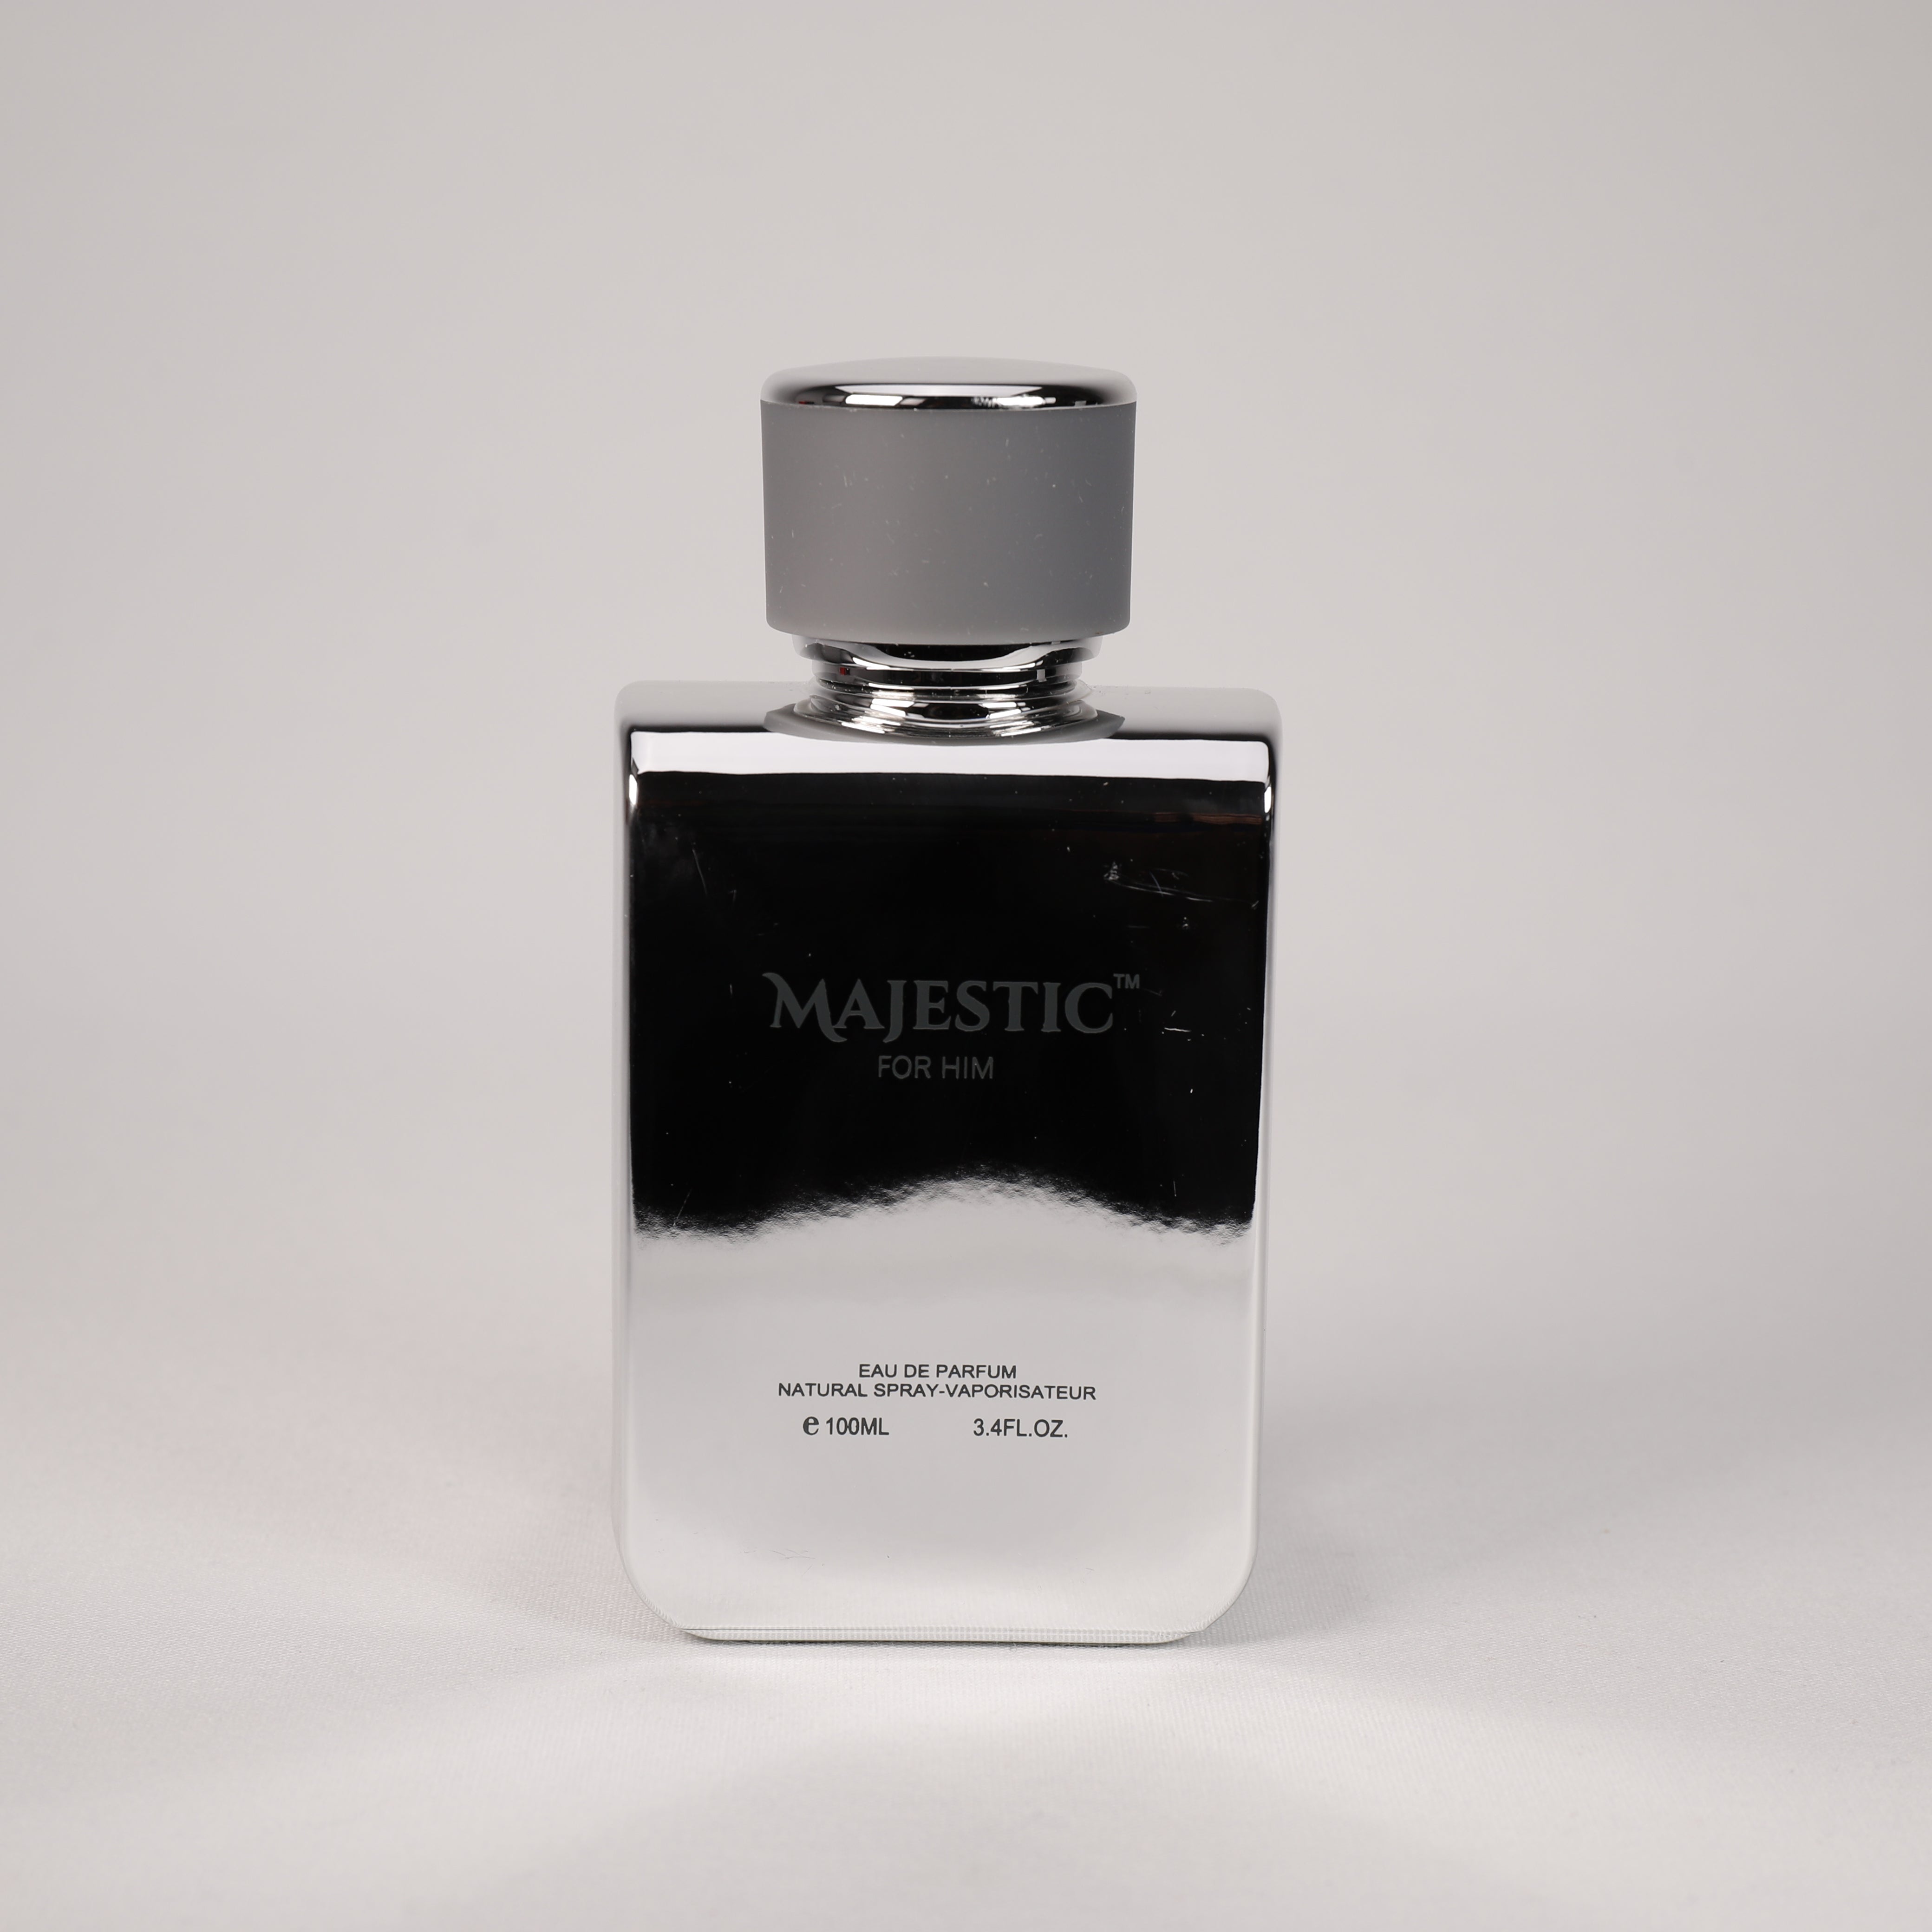 Majestic für Herren, Vaporizer mit natürlichem Spray, 100 ml Duft, Parfum, TOP Parfüm, NEU OVP